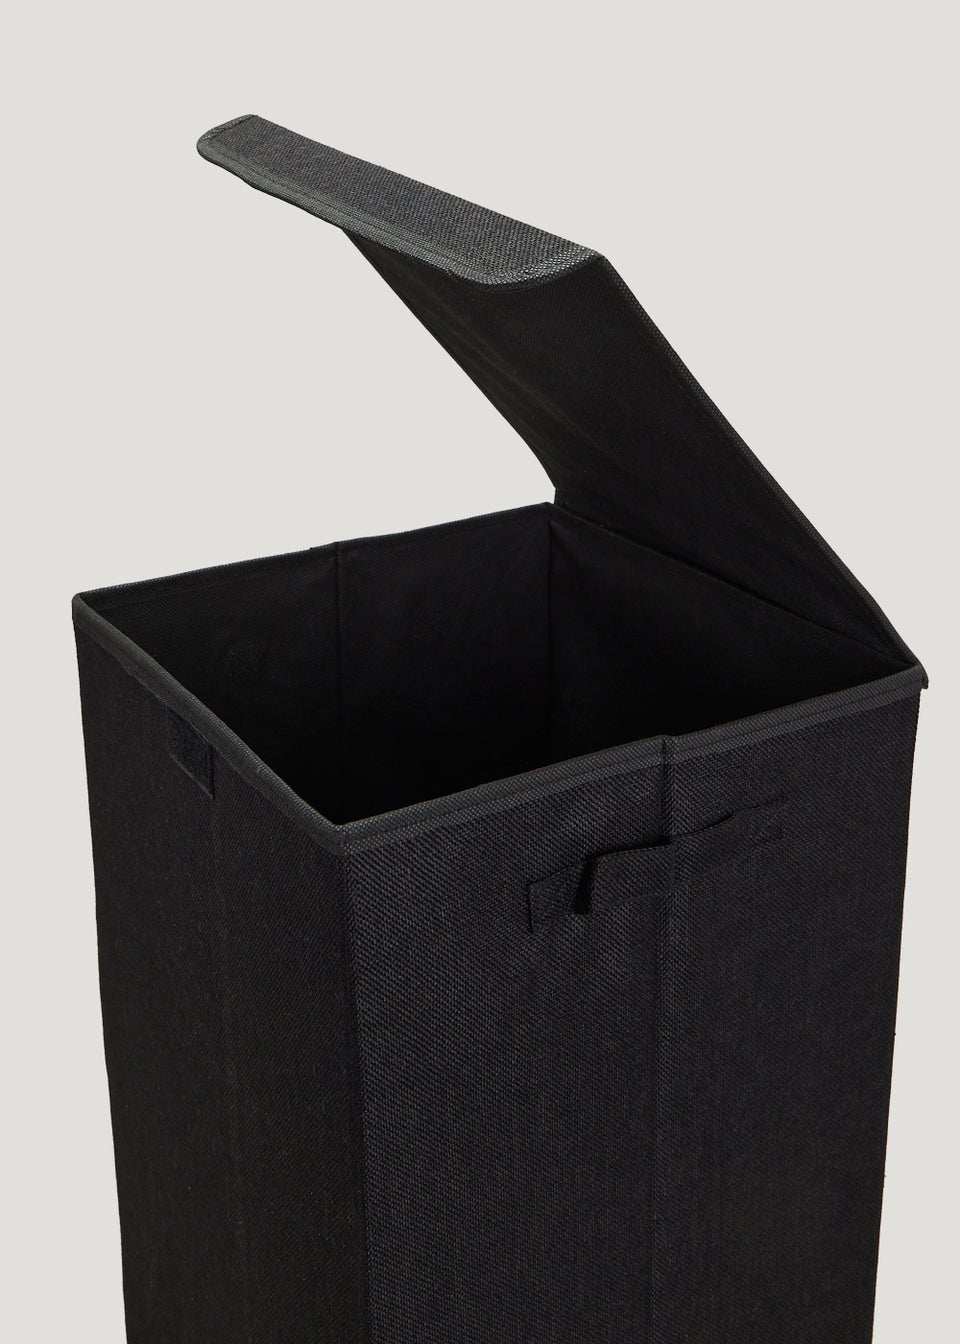 Black Collapsible Laundry Basket (32cm x 32cm x 50cm)